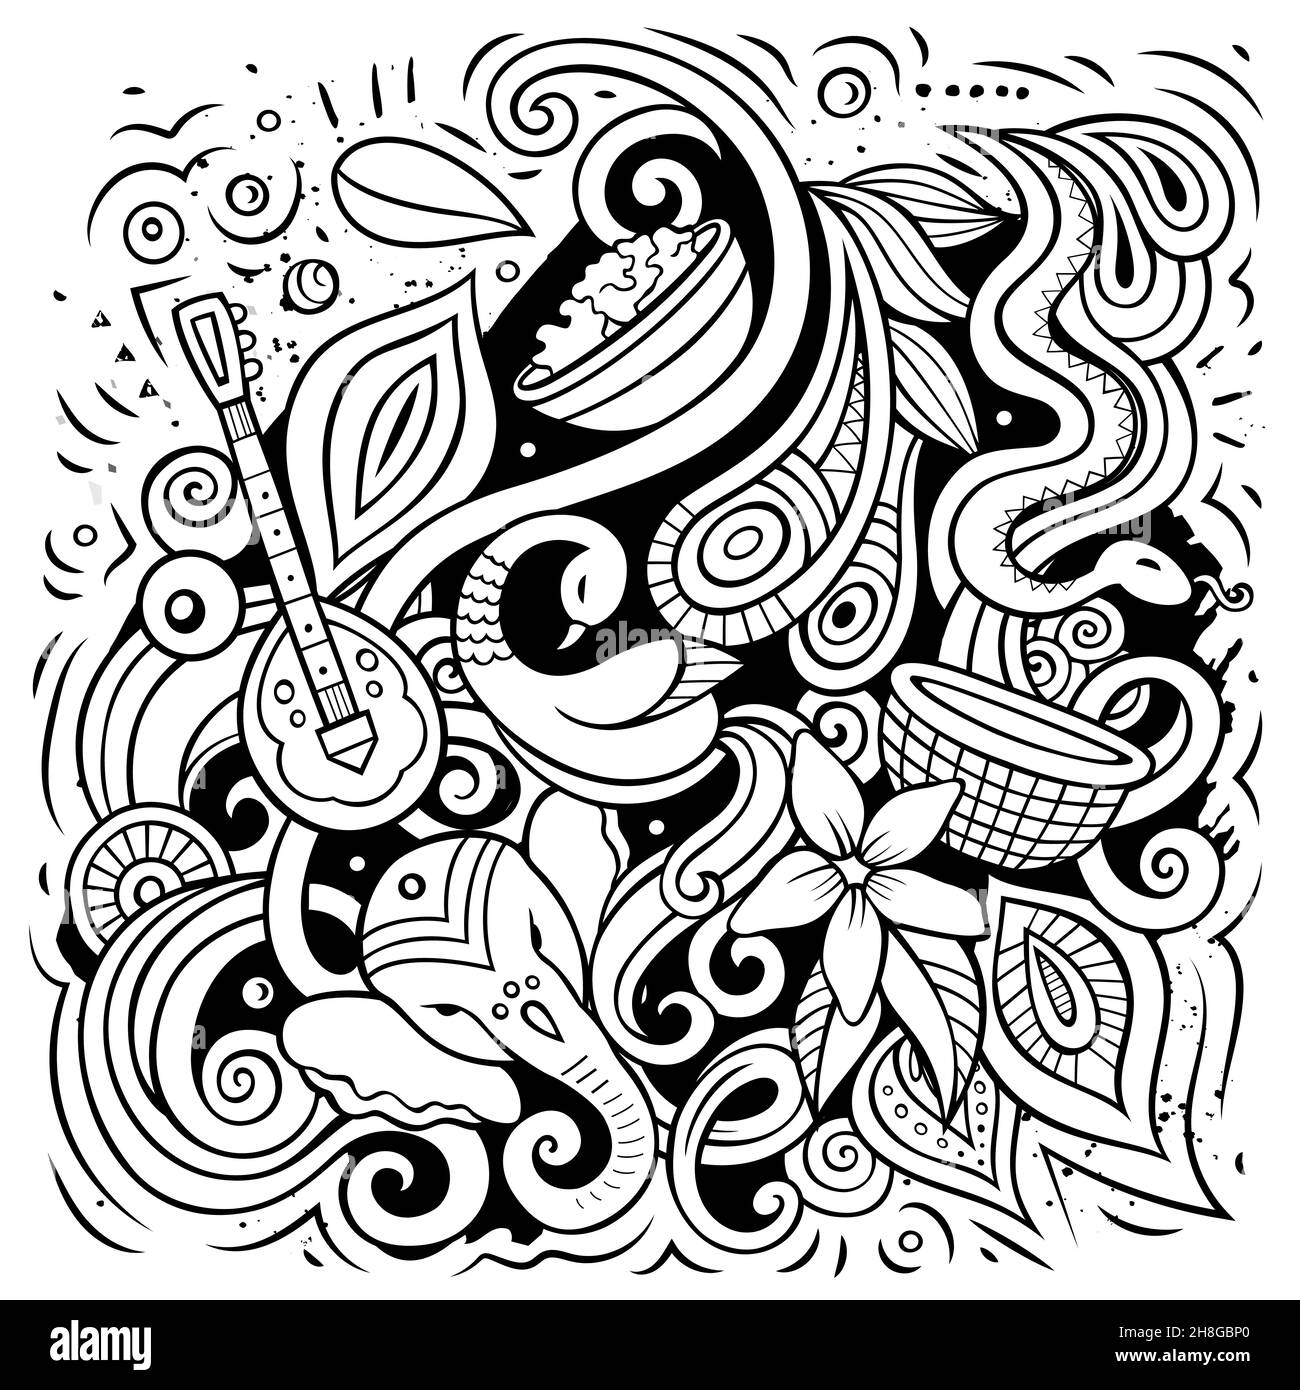 India cartoon vettore Doodle illustrazione. Line art composizione dettagliata con molti oggetti e simboli indiani. Illustrazione Vettoriale